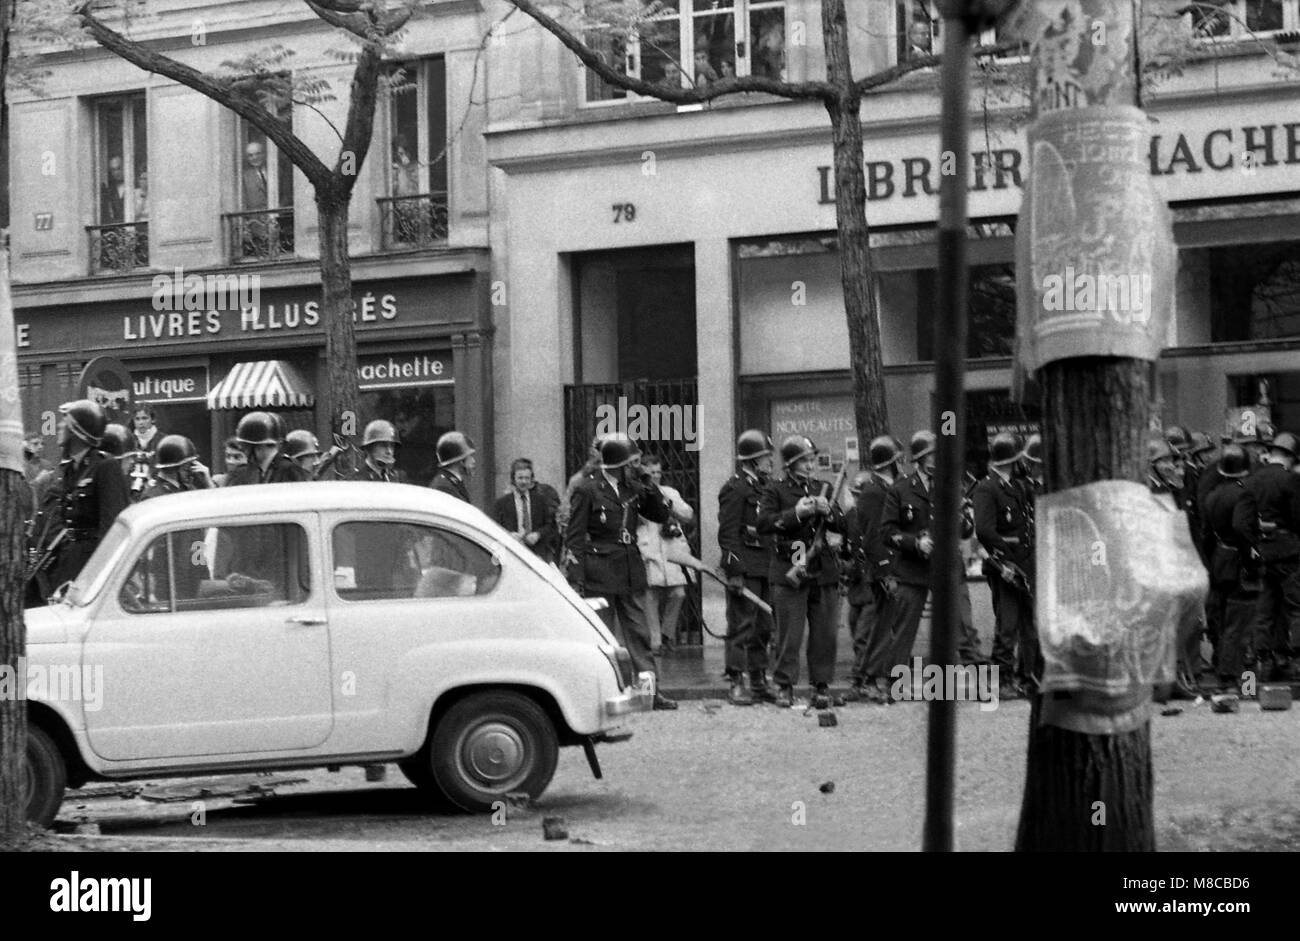 Philippe Gras / Le Pictorium - 68 de Mayo - 1968 - Francia / Ile-de-France (región) / Paris - Policía esperando Foto de stock